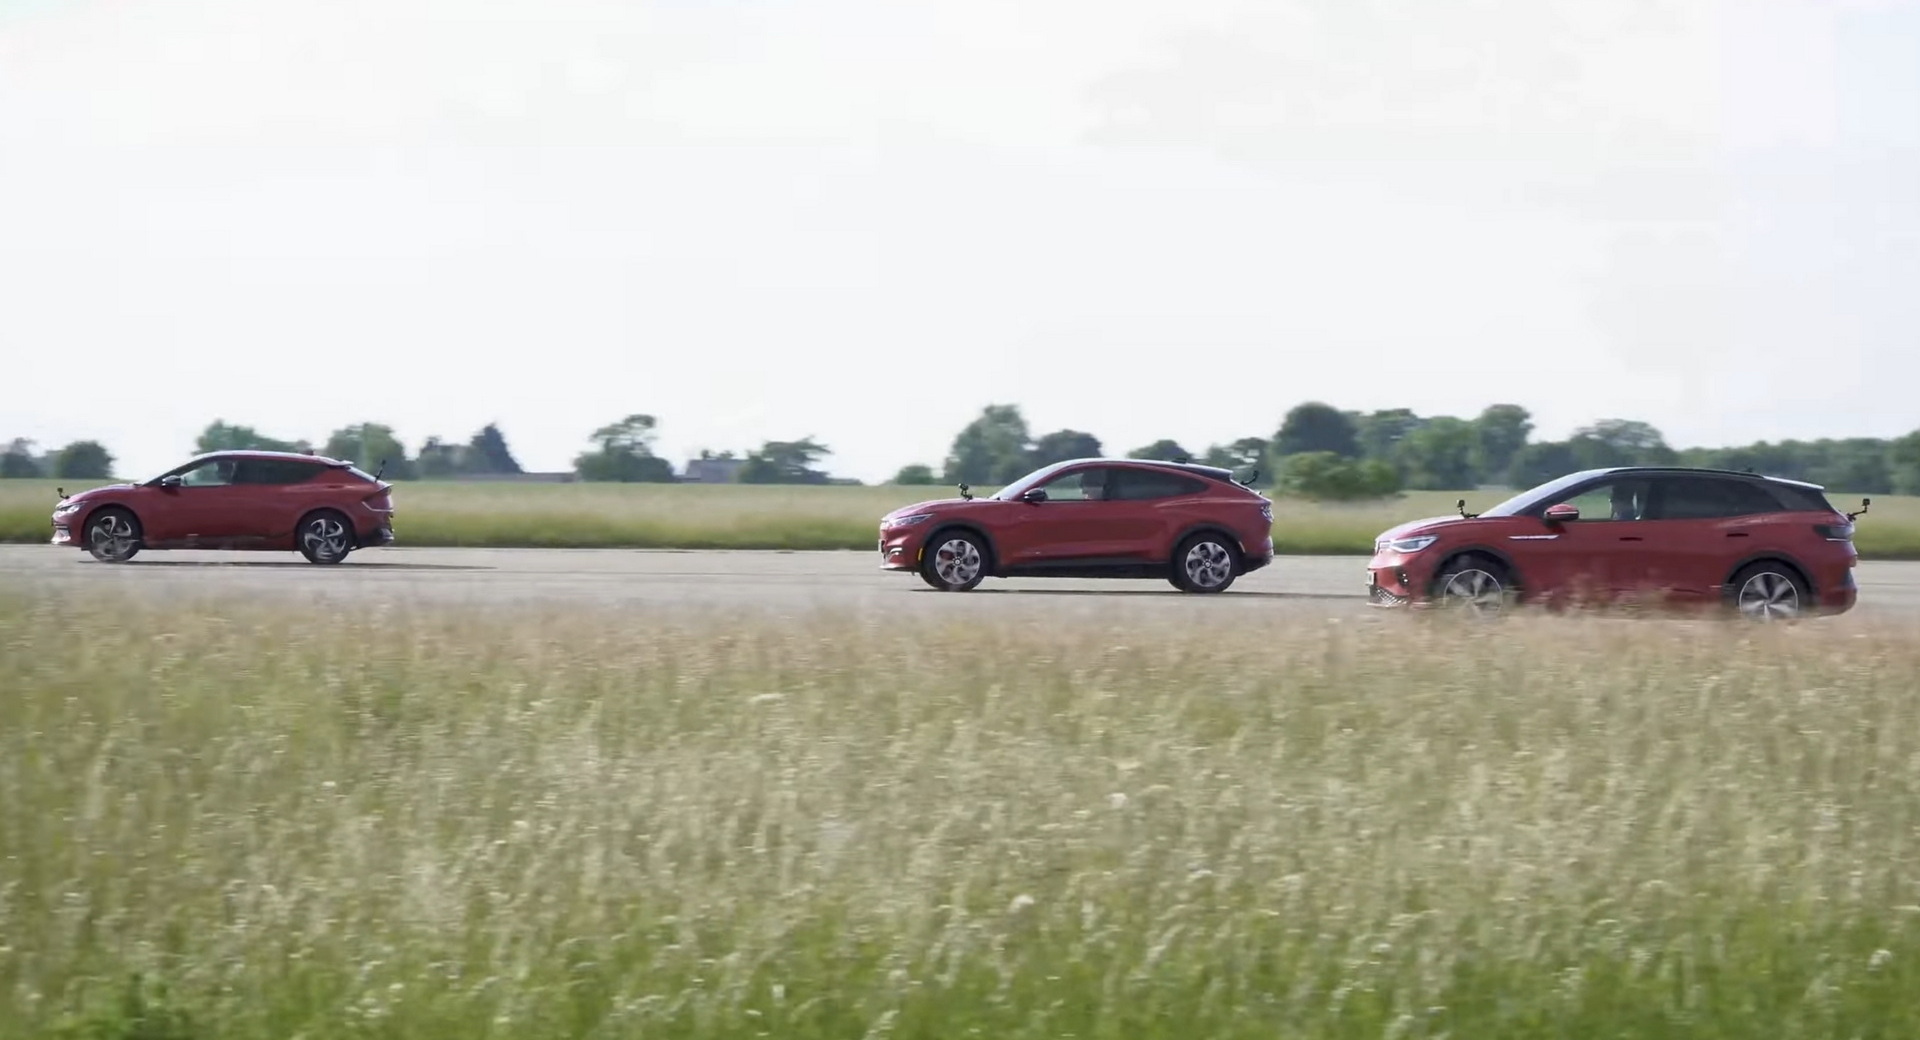 La VW ID.4 la plus rapide peut-elle affronter une Ford Mustang Mach-E et une Kia EV6 de milieu de gamme?